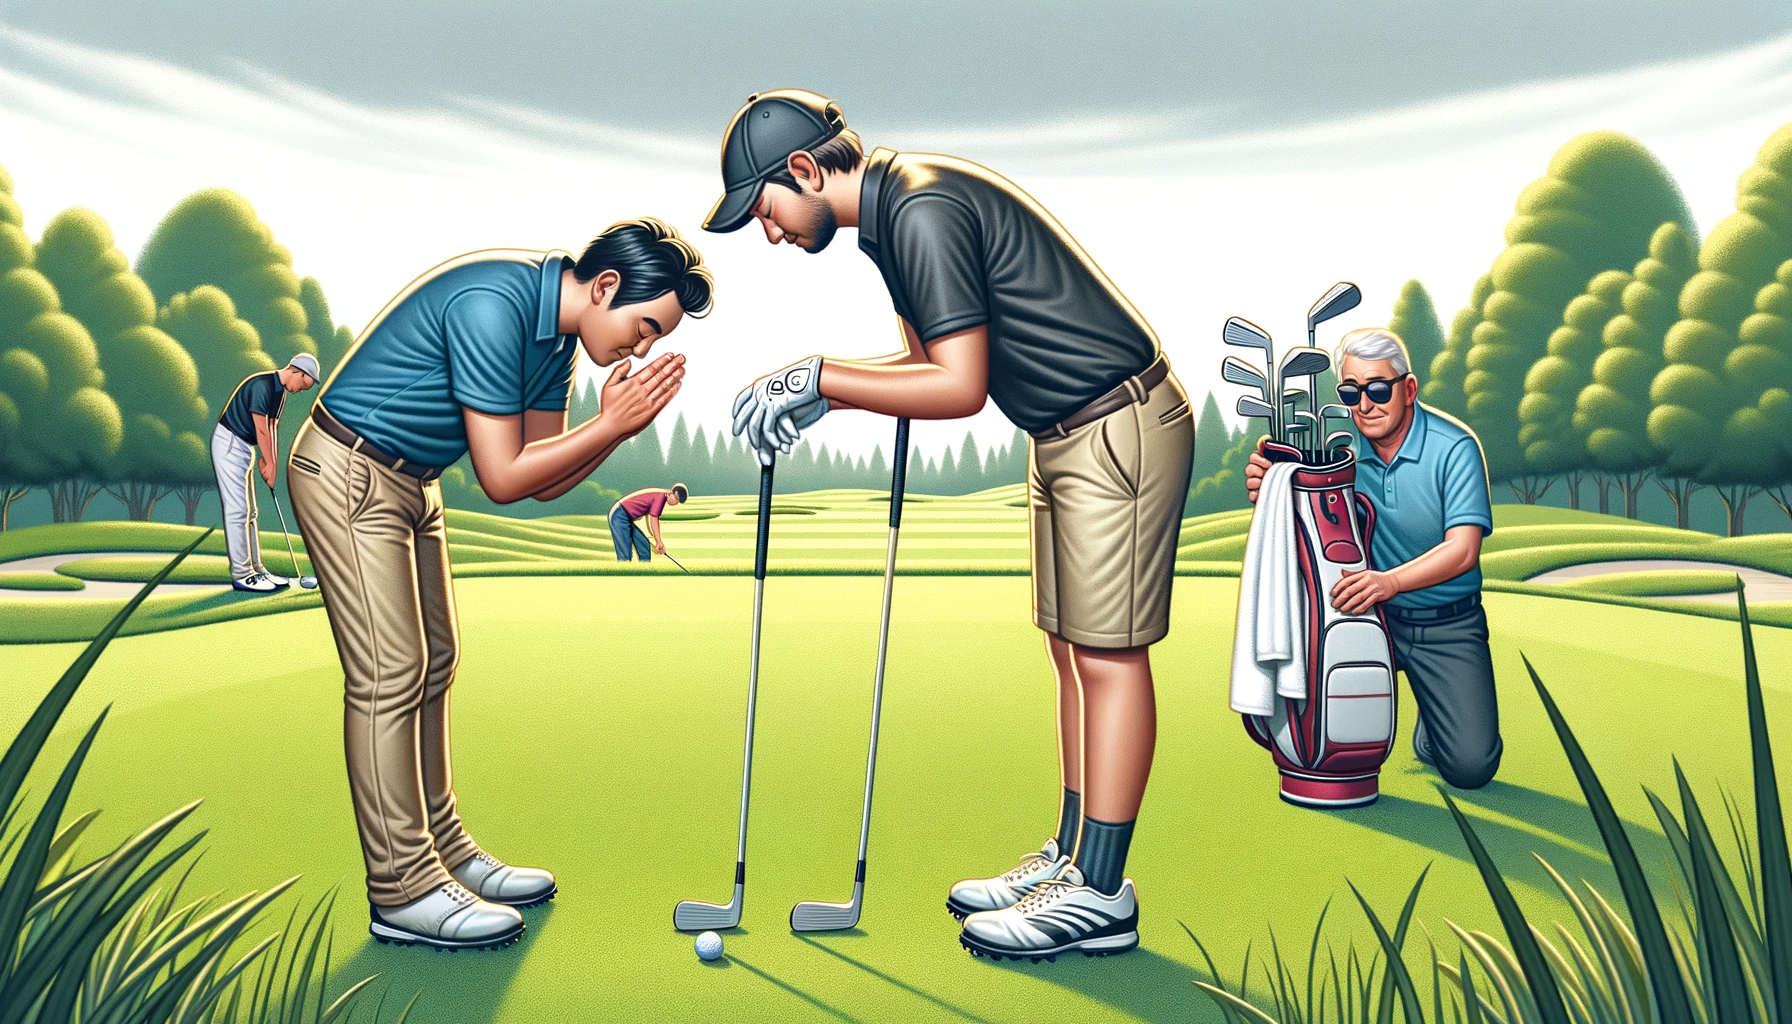 골프 코스 에티켓: 기본 규칙과 매너로 더 나은 라운딩 즐기기 - 플레이어 앞뒤에 목례&#44; 잔디 고치기와 흔들기